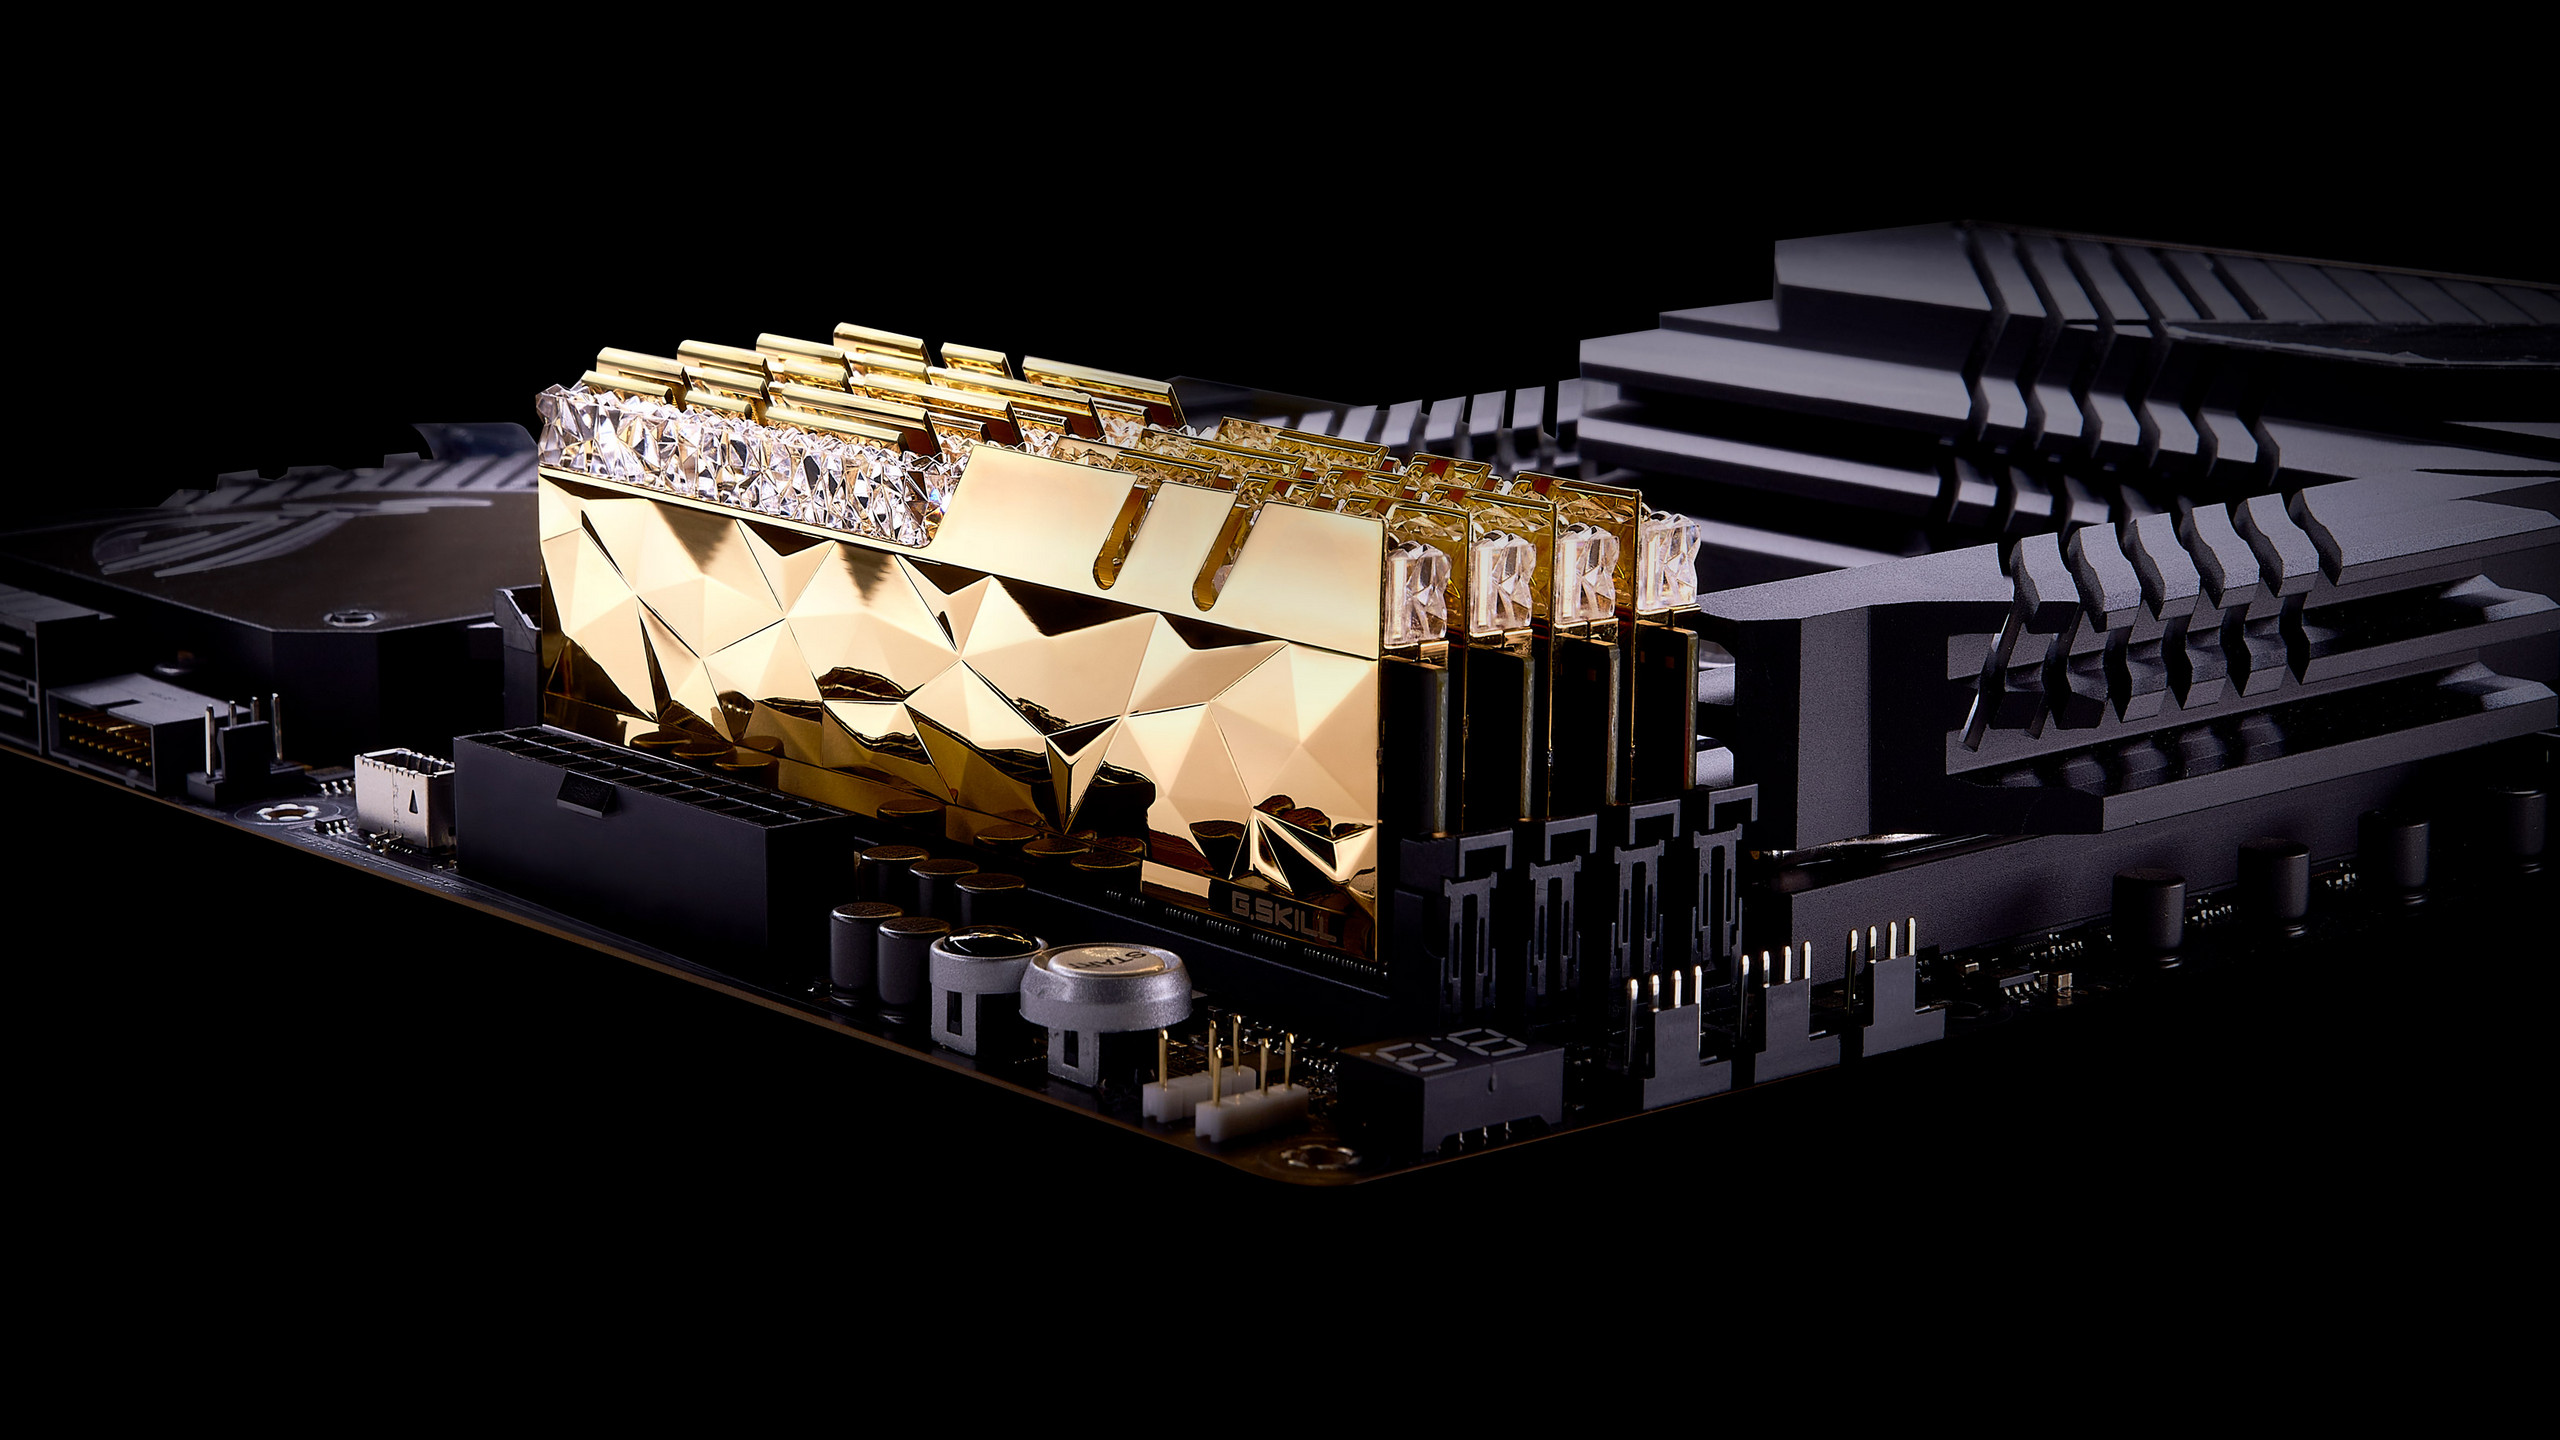 Immagine pubblicata in relazione al seguente contenuto: G.SKILL annuncia moduli DDR4 Trident Z Royal Elite con frequenza fino a 5333MHz | Nome immagine: news31950_G-SKILL-Trident-Z-Royal-Elite_2.jpg